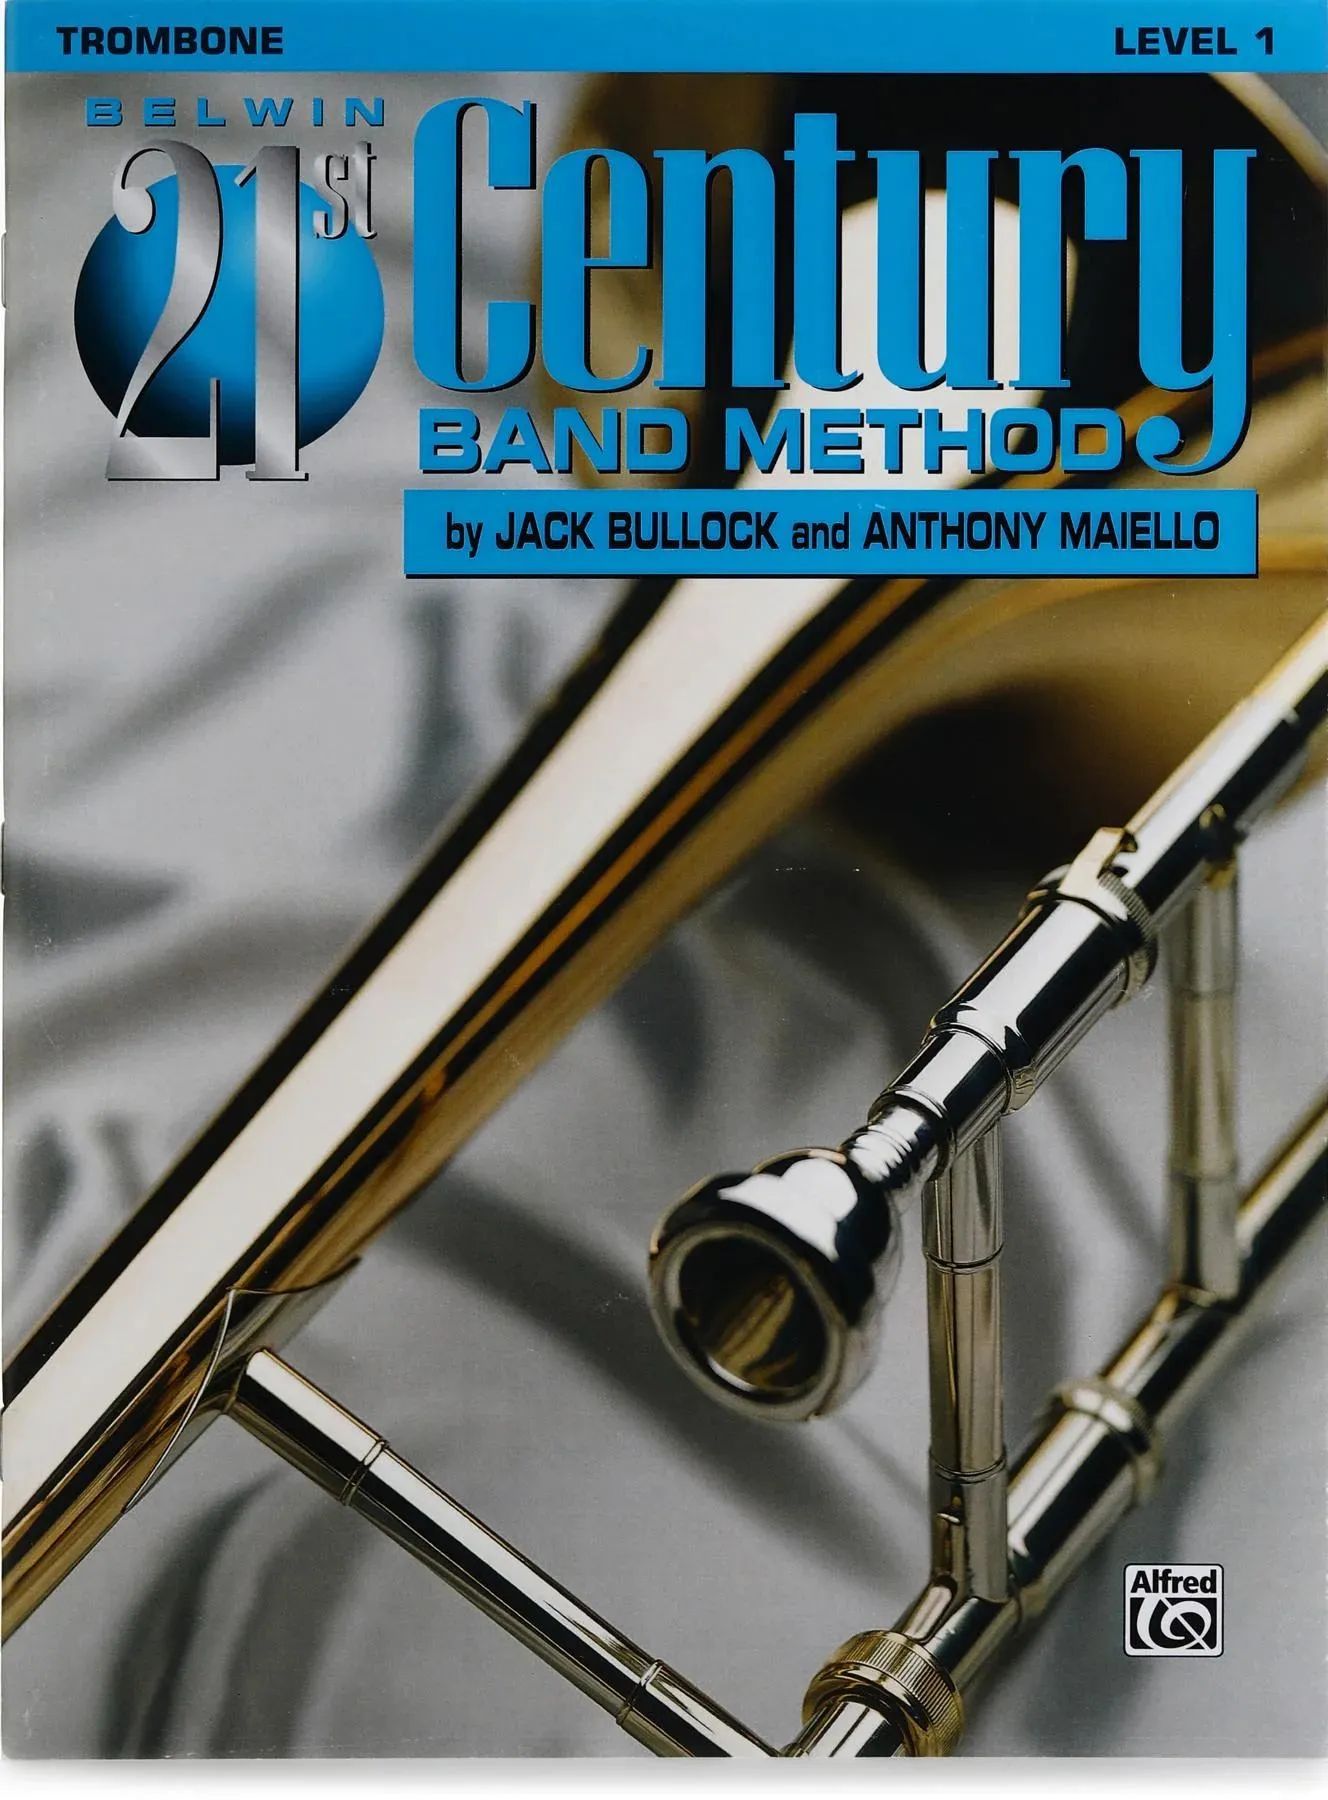 21st Century Band. Trombone 1sinf kuylaru. Leveling methods